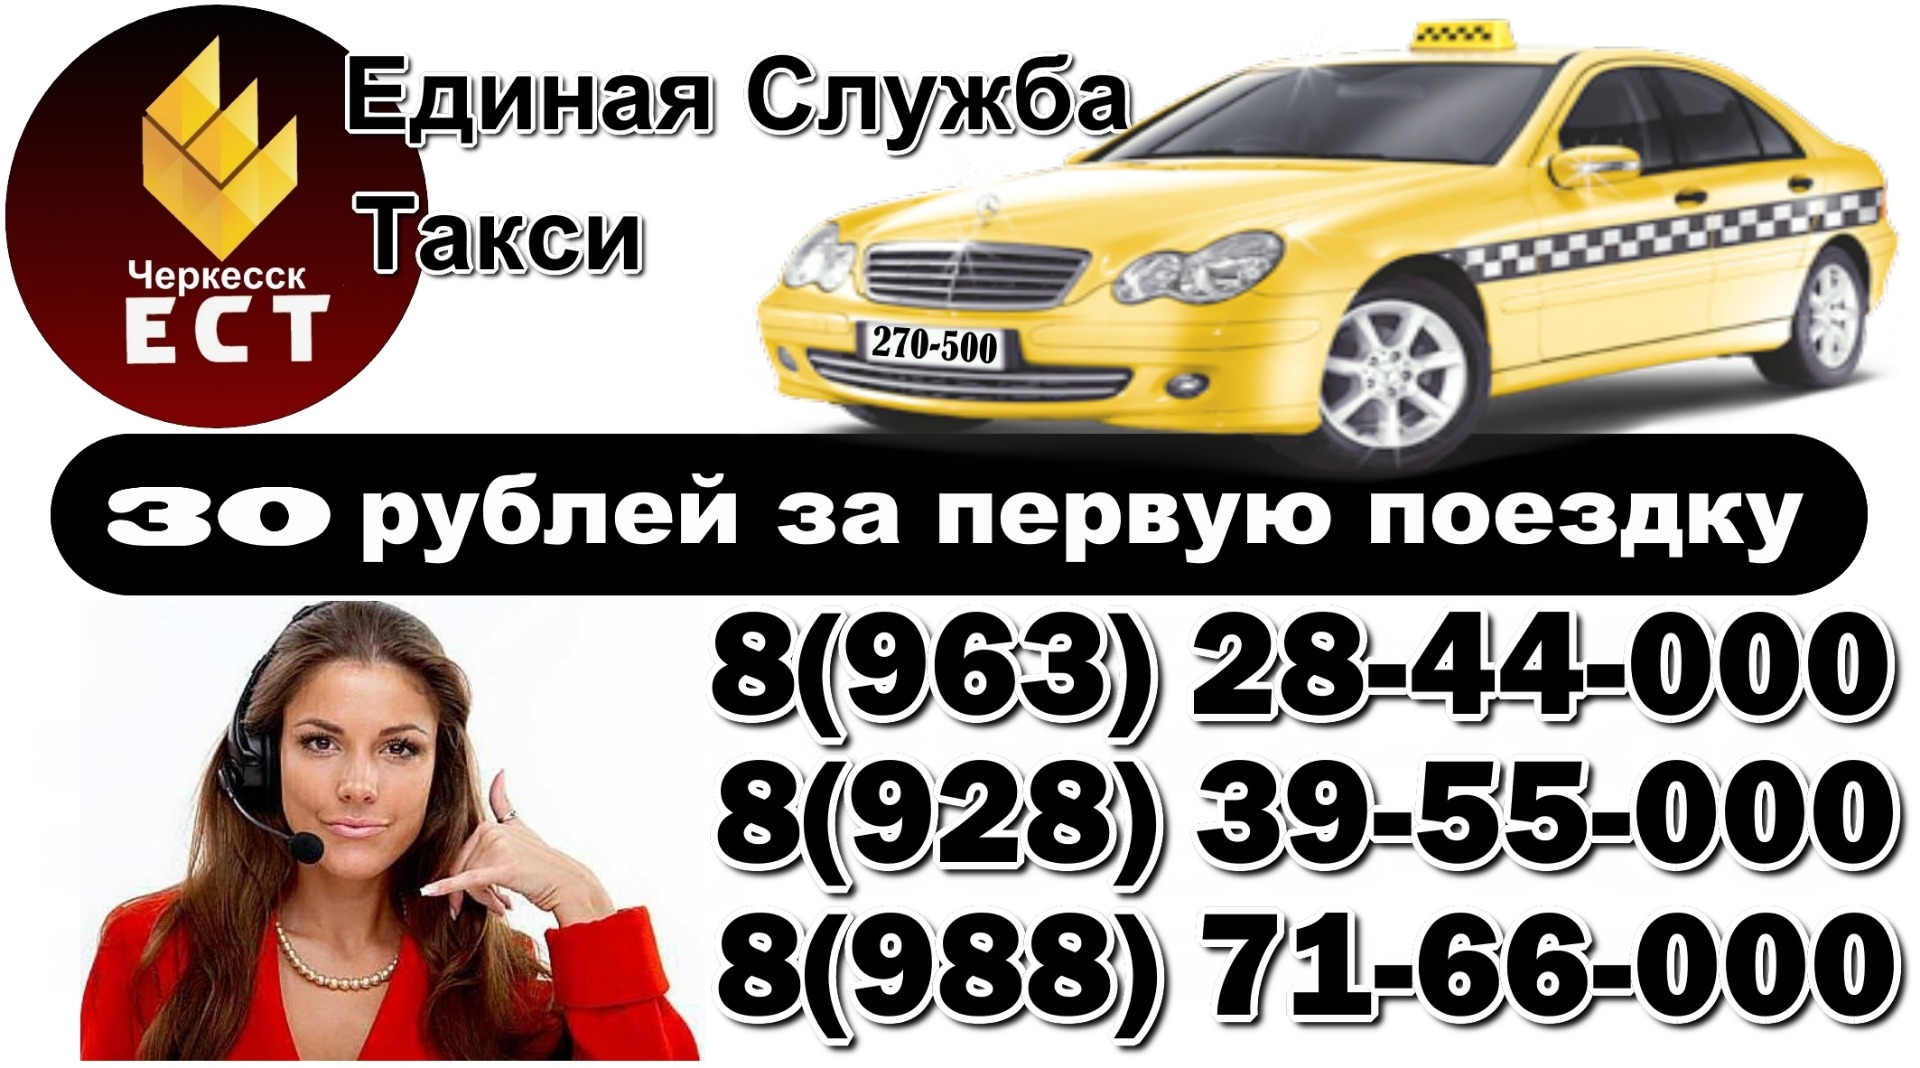 Скорость черкесск. Номер телефона такси. Номера службы такси. Такси Единая служба номер. Такси Черкесск.